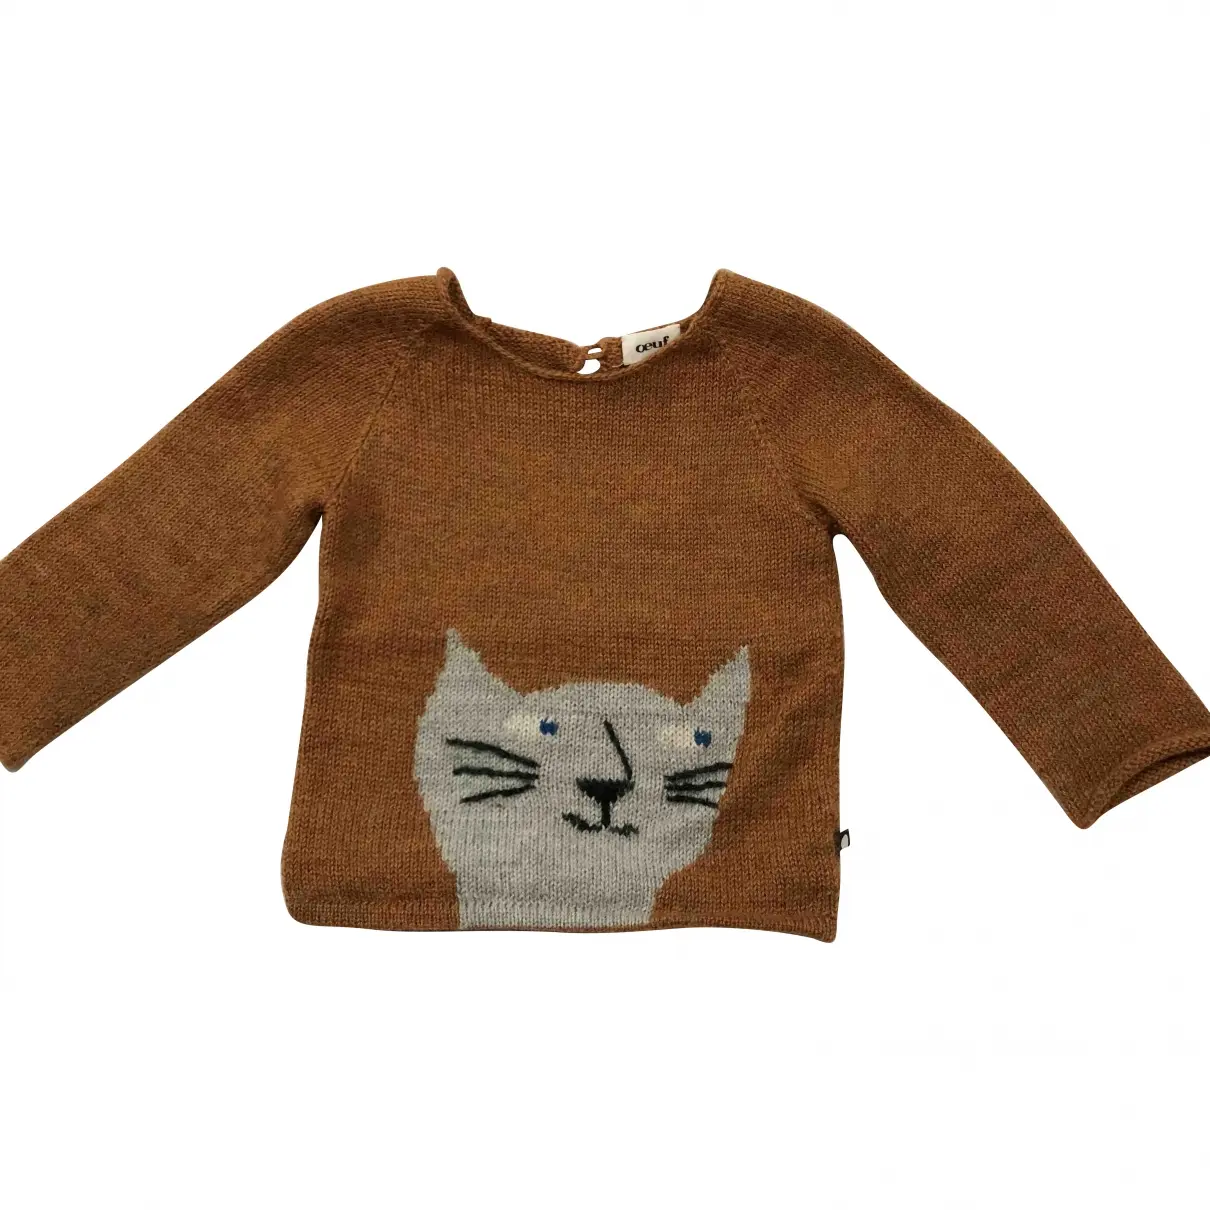 Wool sweater Oeuf Nyc